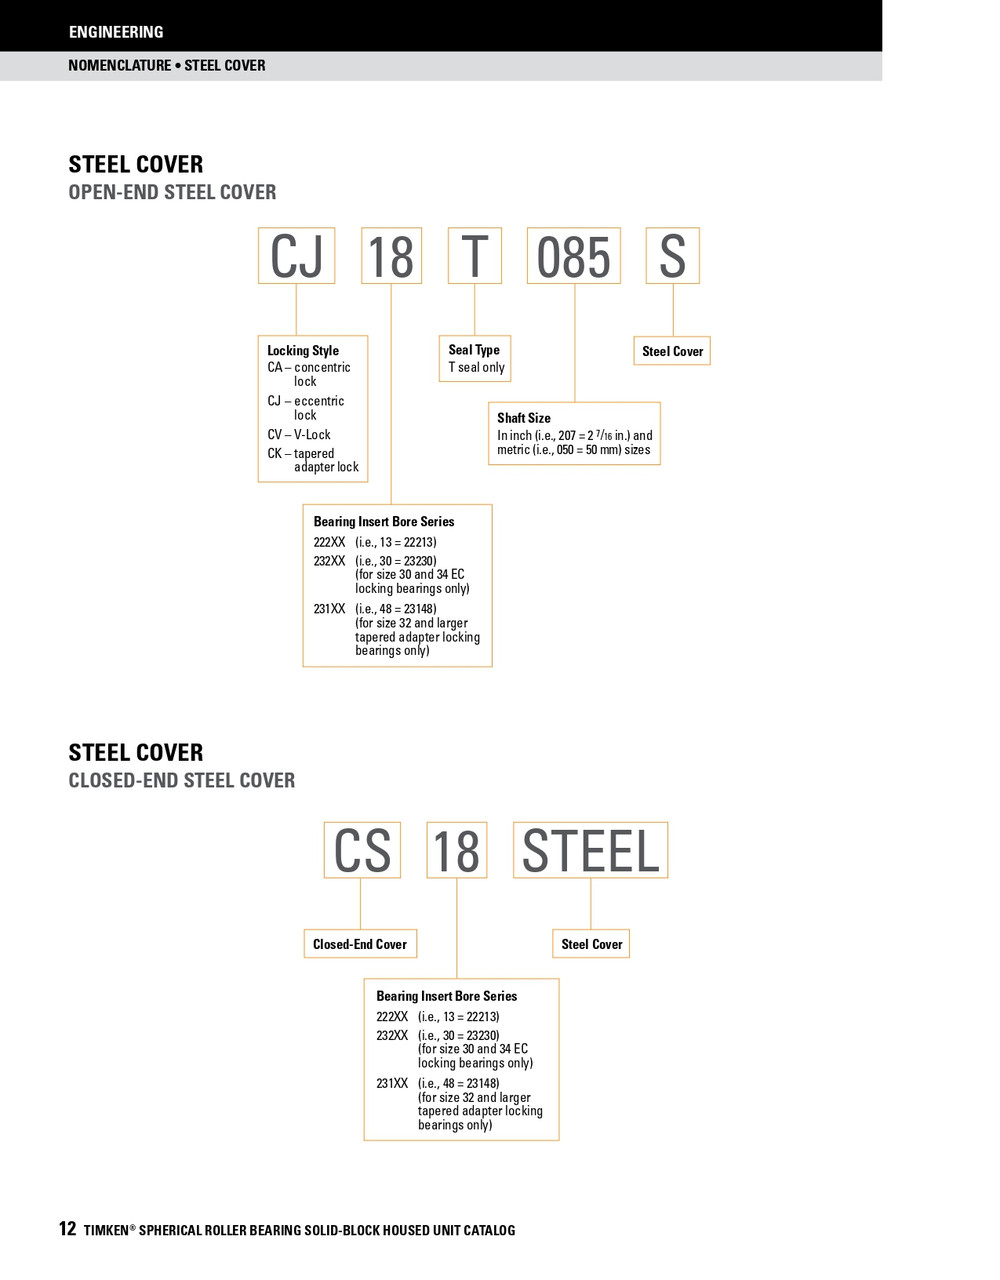 2-7/16" Timken SRB Steel Open End Cover w/Teflon Seal - TA/DV Taper Lock Bushing Type  CK15T207S